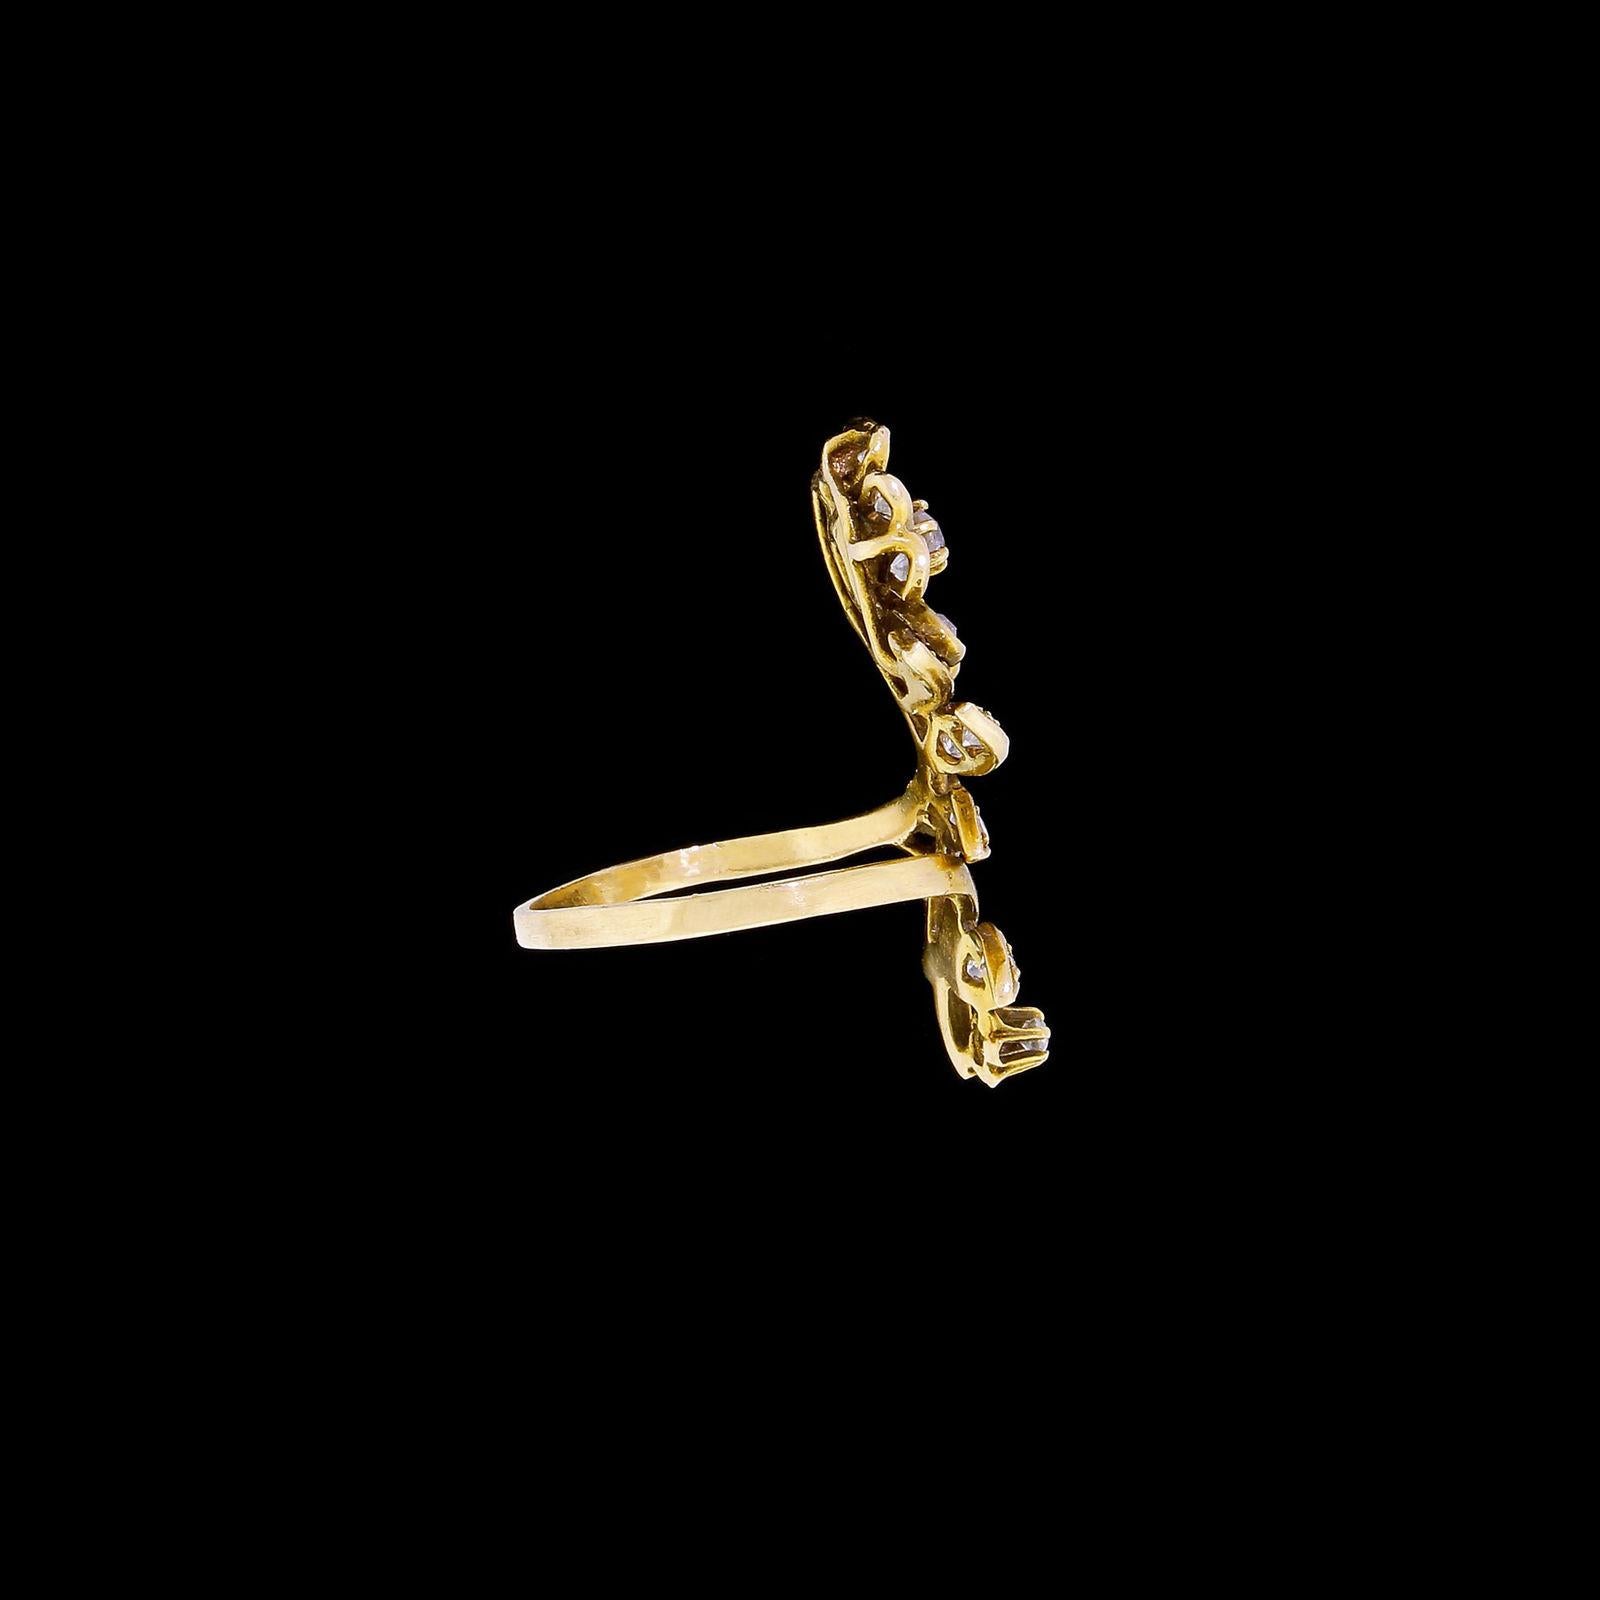 Vintage 14 Karat Gold Diamond Victorian Flower Floral Ring For Sale 1